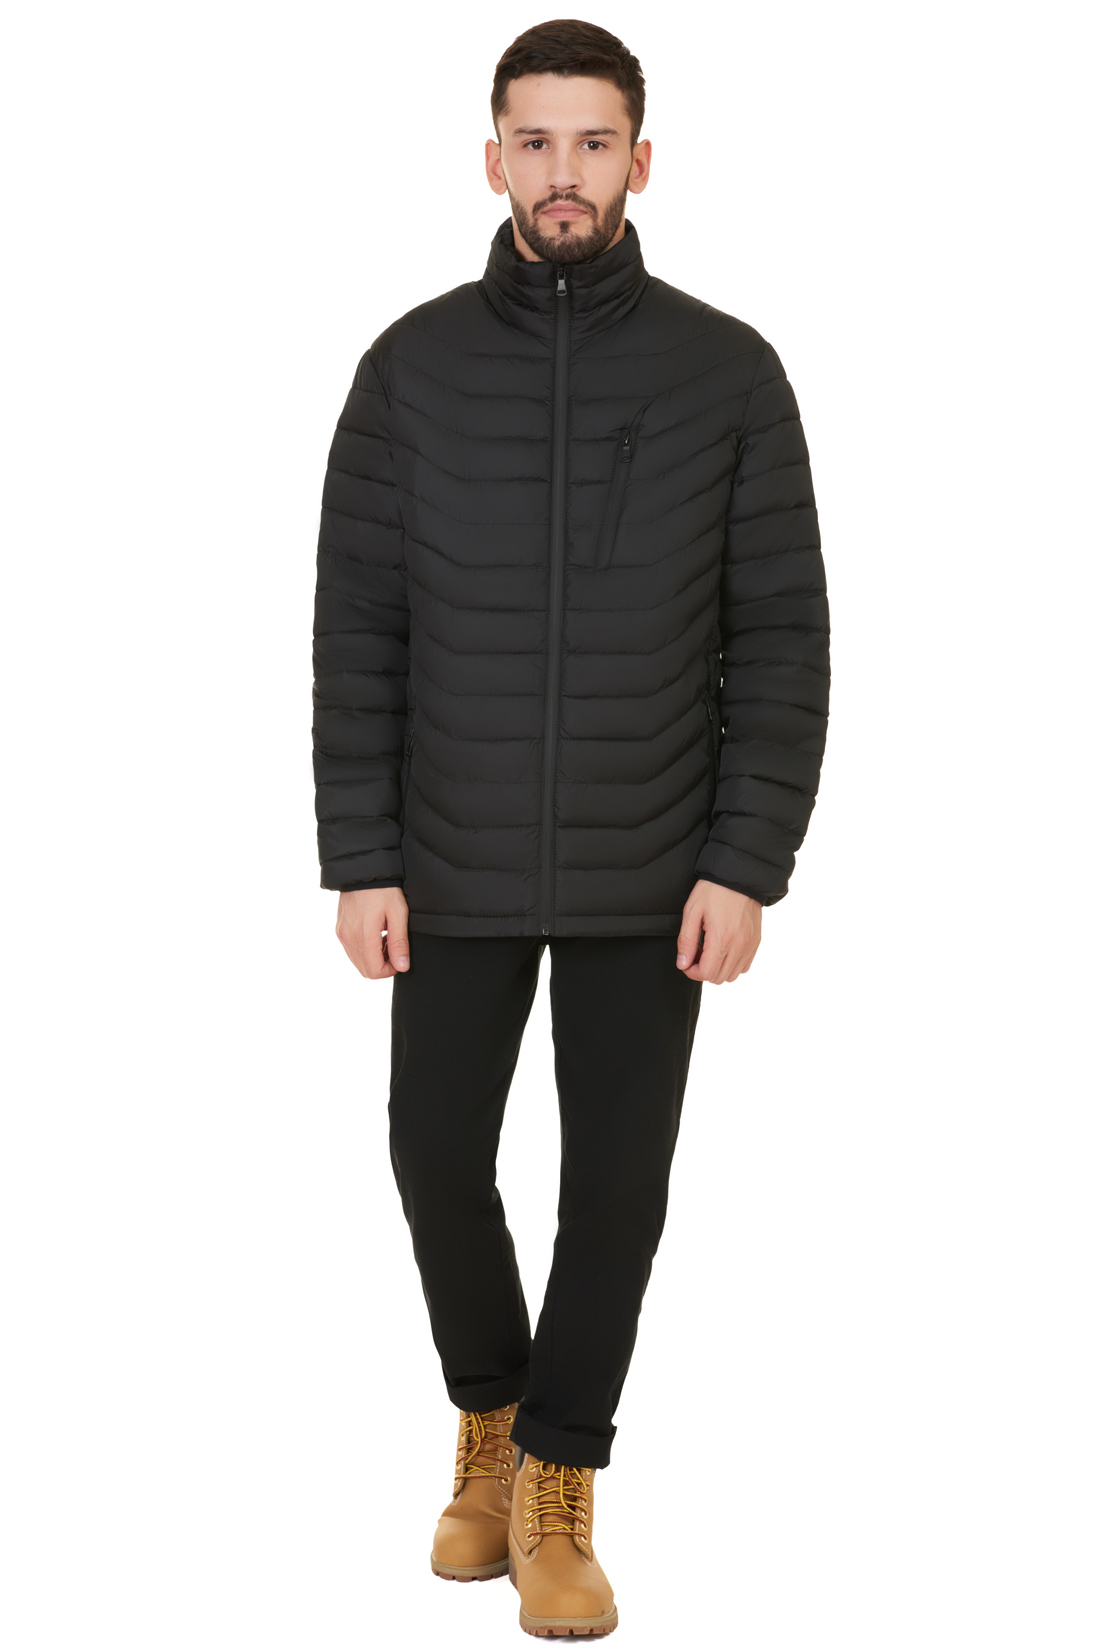 Куртка с непроницаемыми молниями (арт. baon B537547), размер L, цвет черный Куртка с непроницаемыми молниями (арт. baon B537547) - фото 5